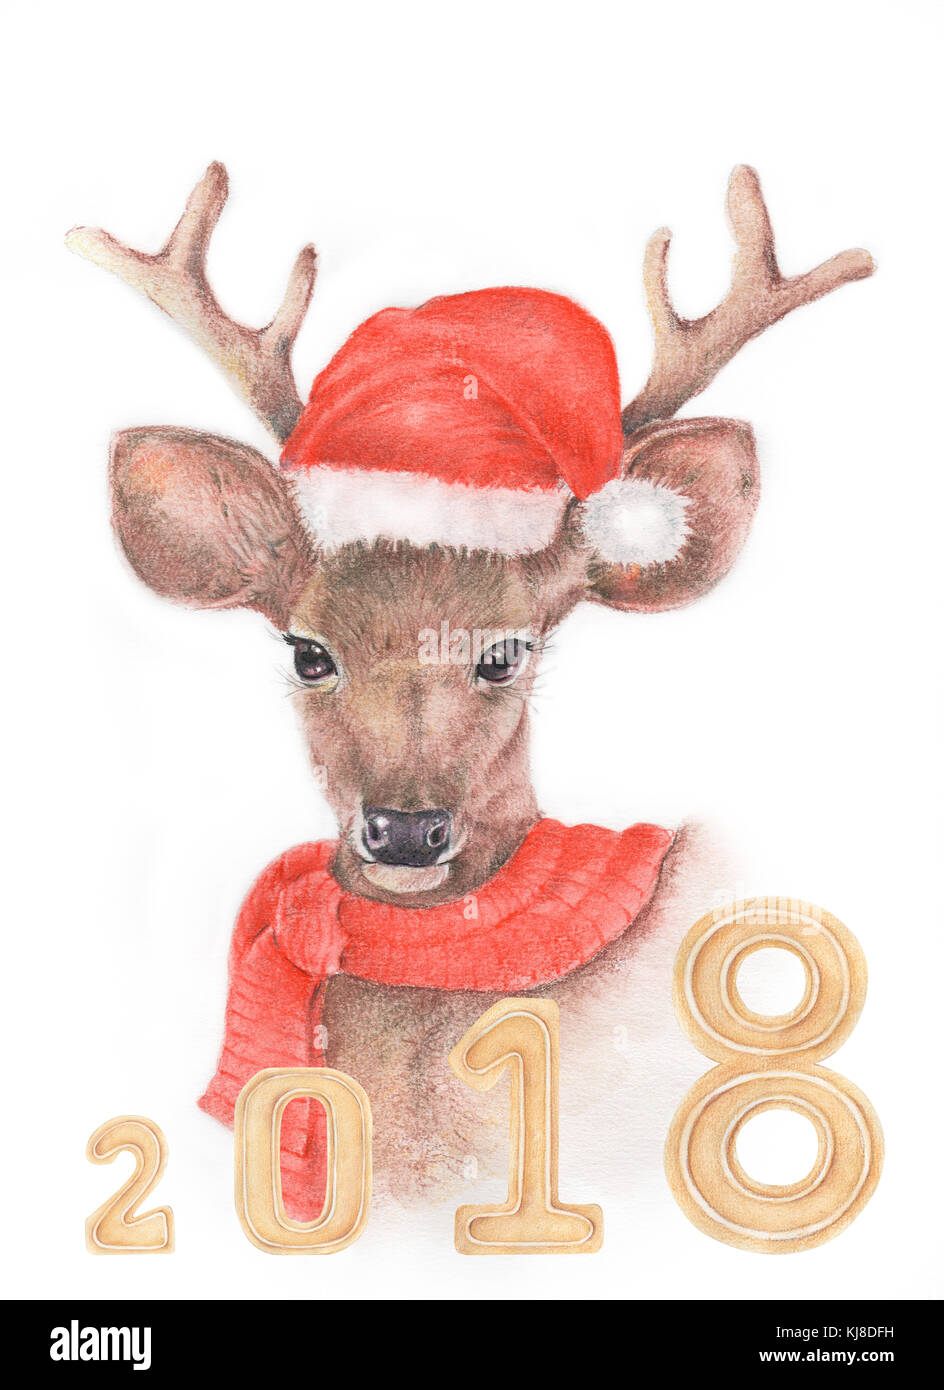 Aquarell und Bleistift Farbe Abbildung: Rotwild von Hand mit Dekoration,  Weihnachten, frohes neues Jahr 2018 Stockfotografie - Alamy